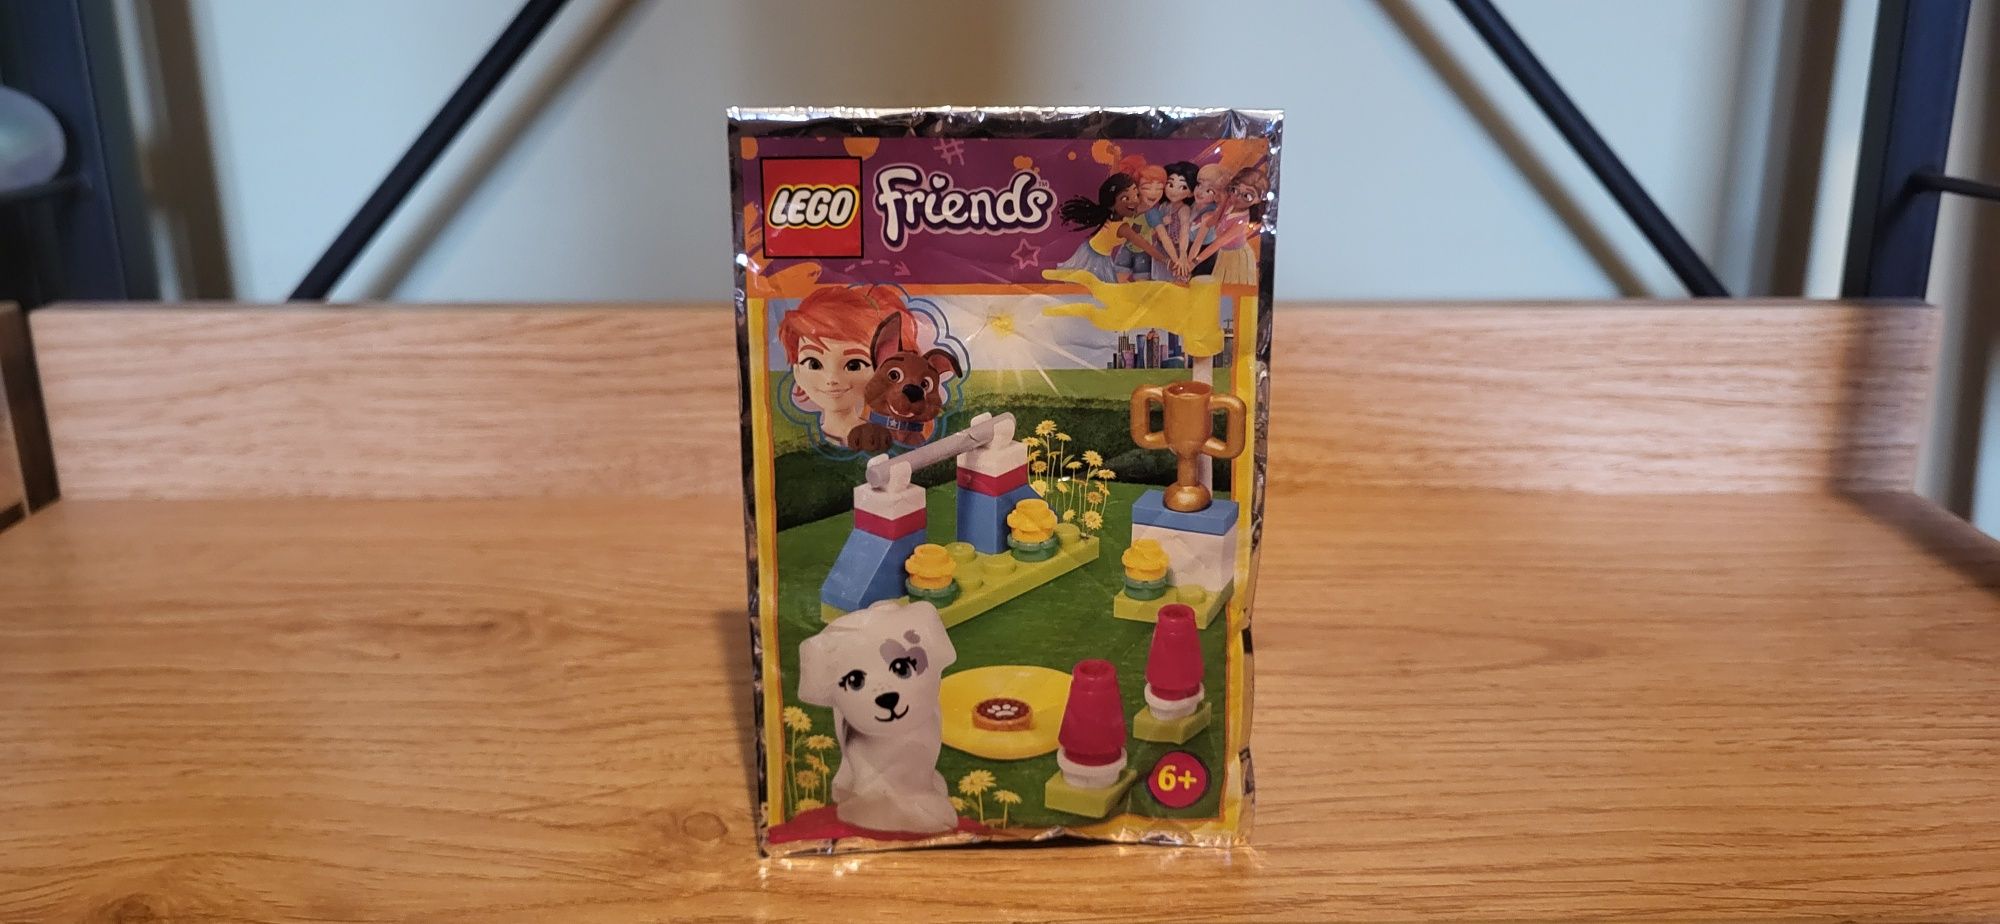 Lego Friends 562004 Piesek Przeszkoda saszetka klocki